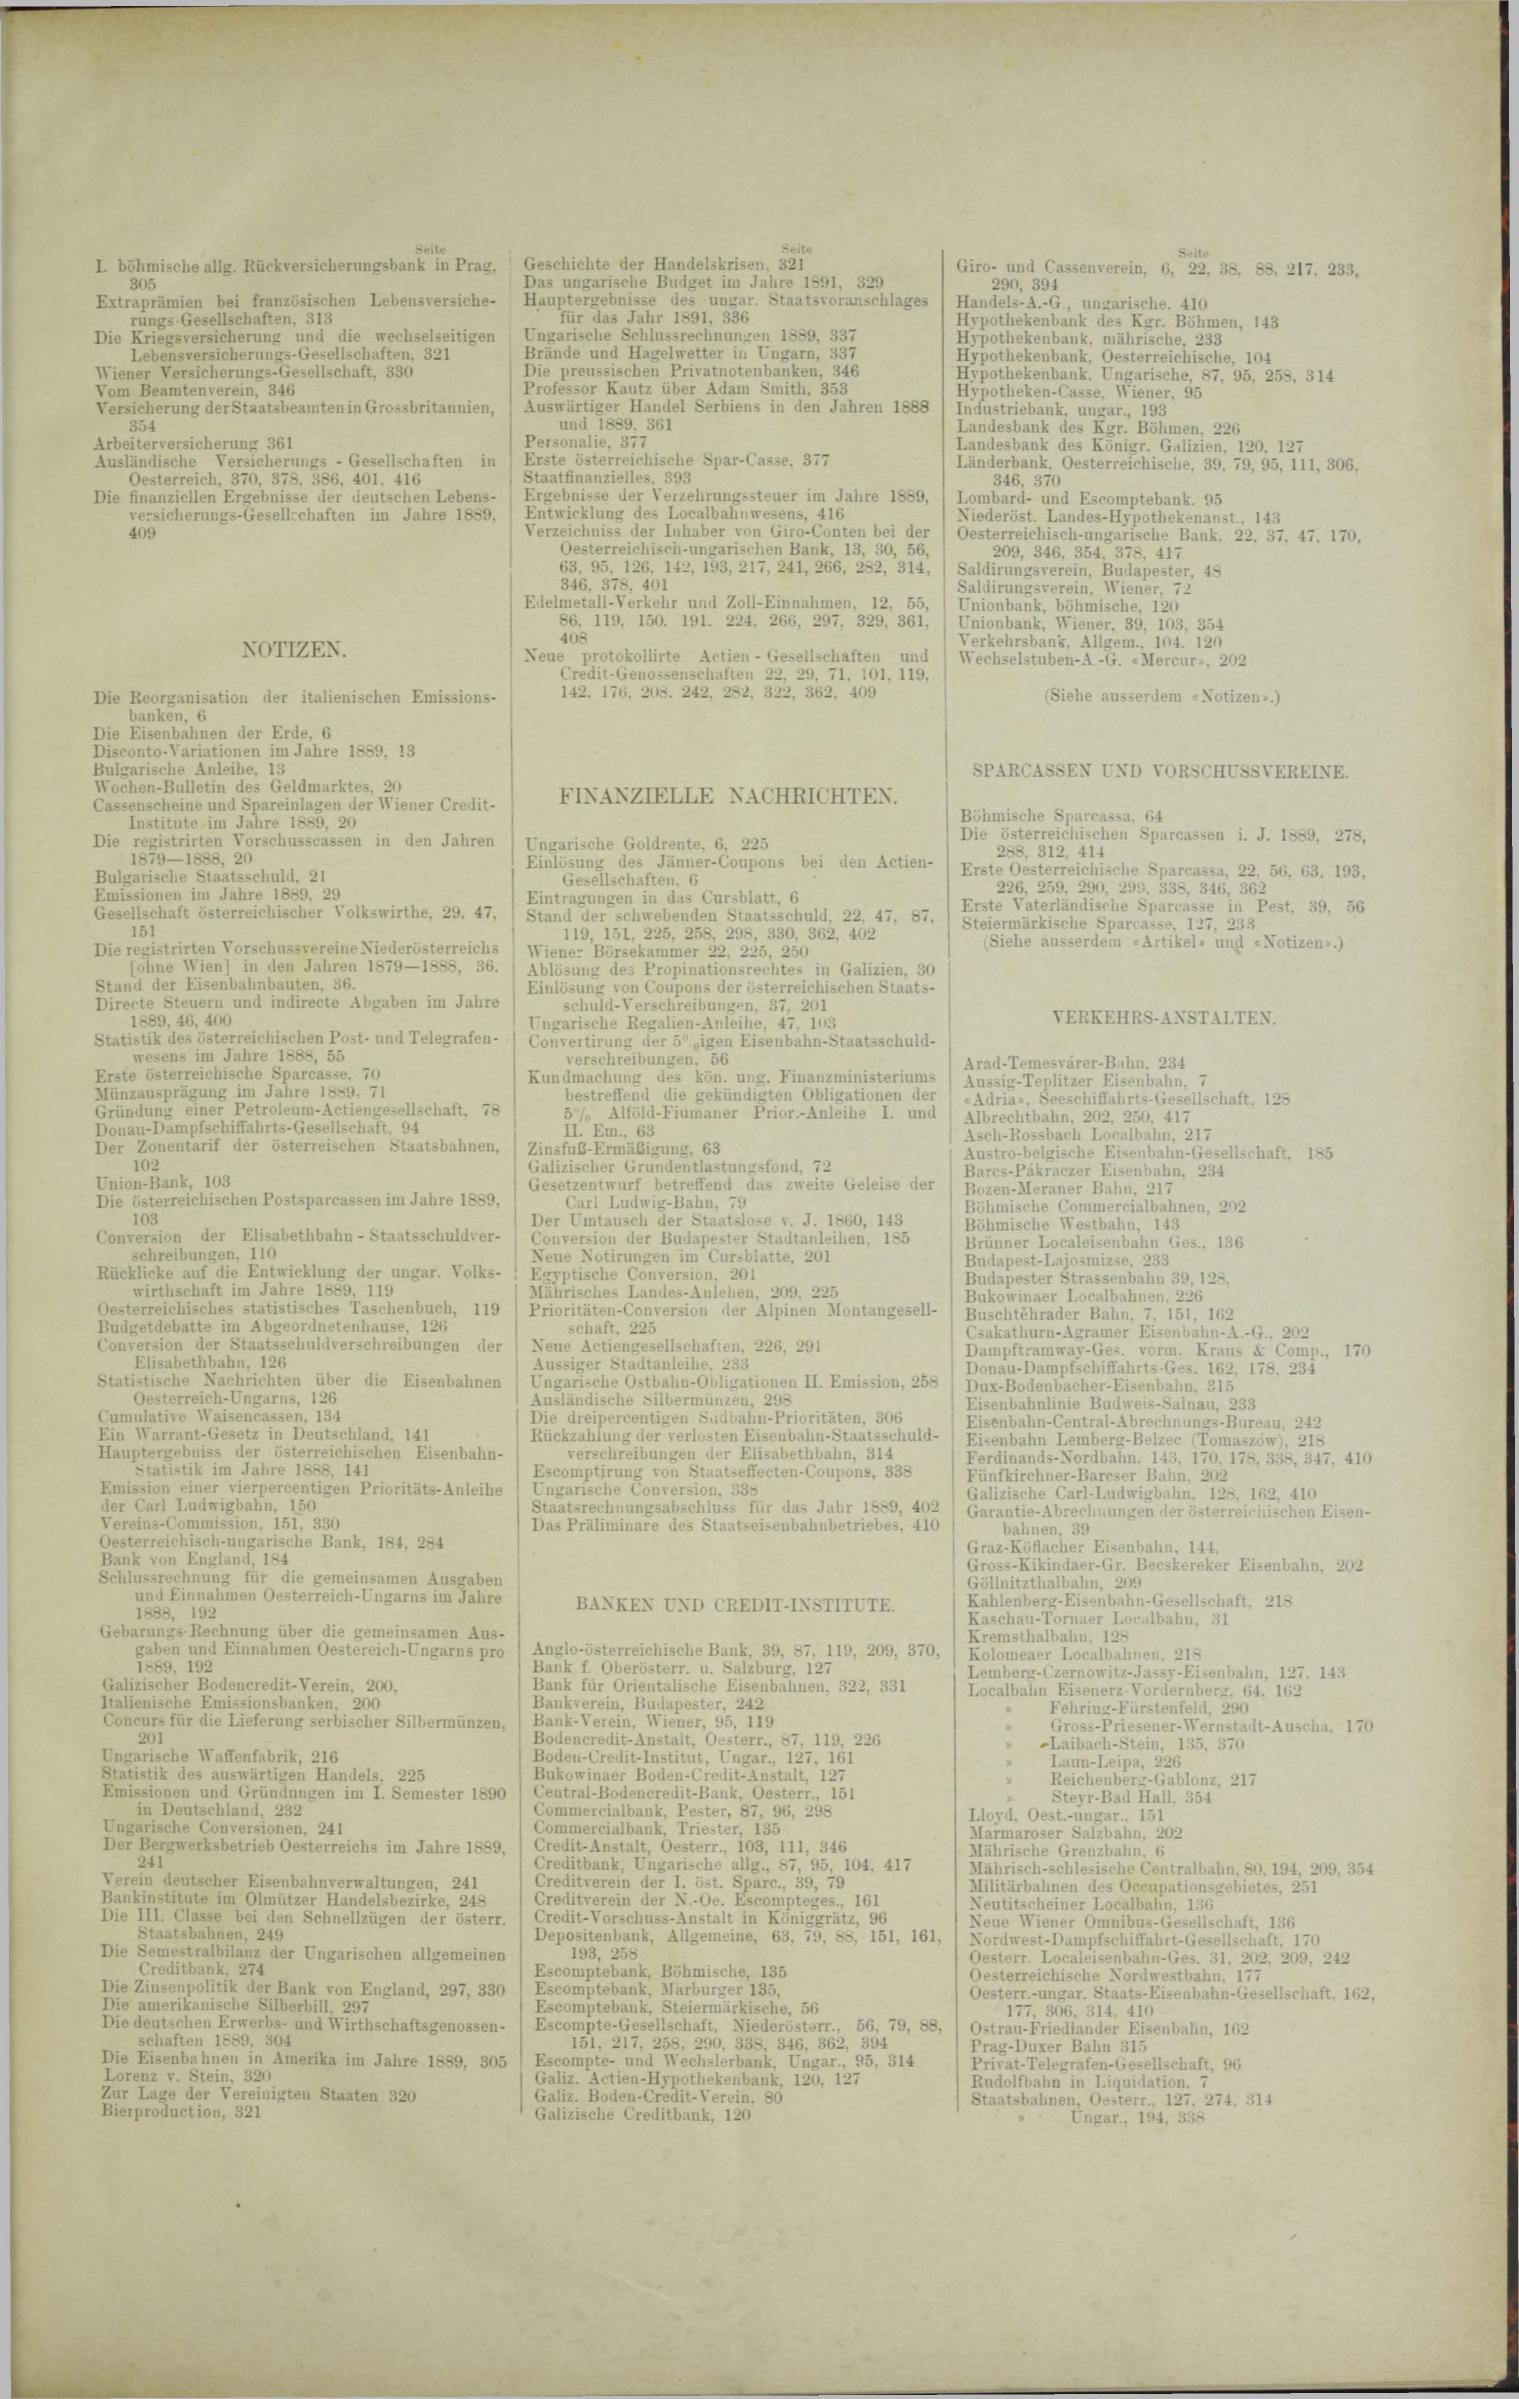 Der Tresor 16.10.1890 - Seite 11